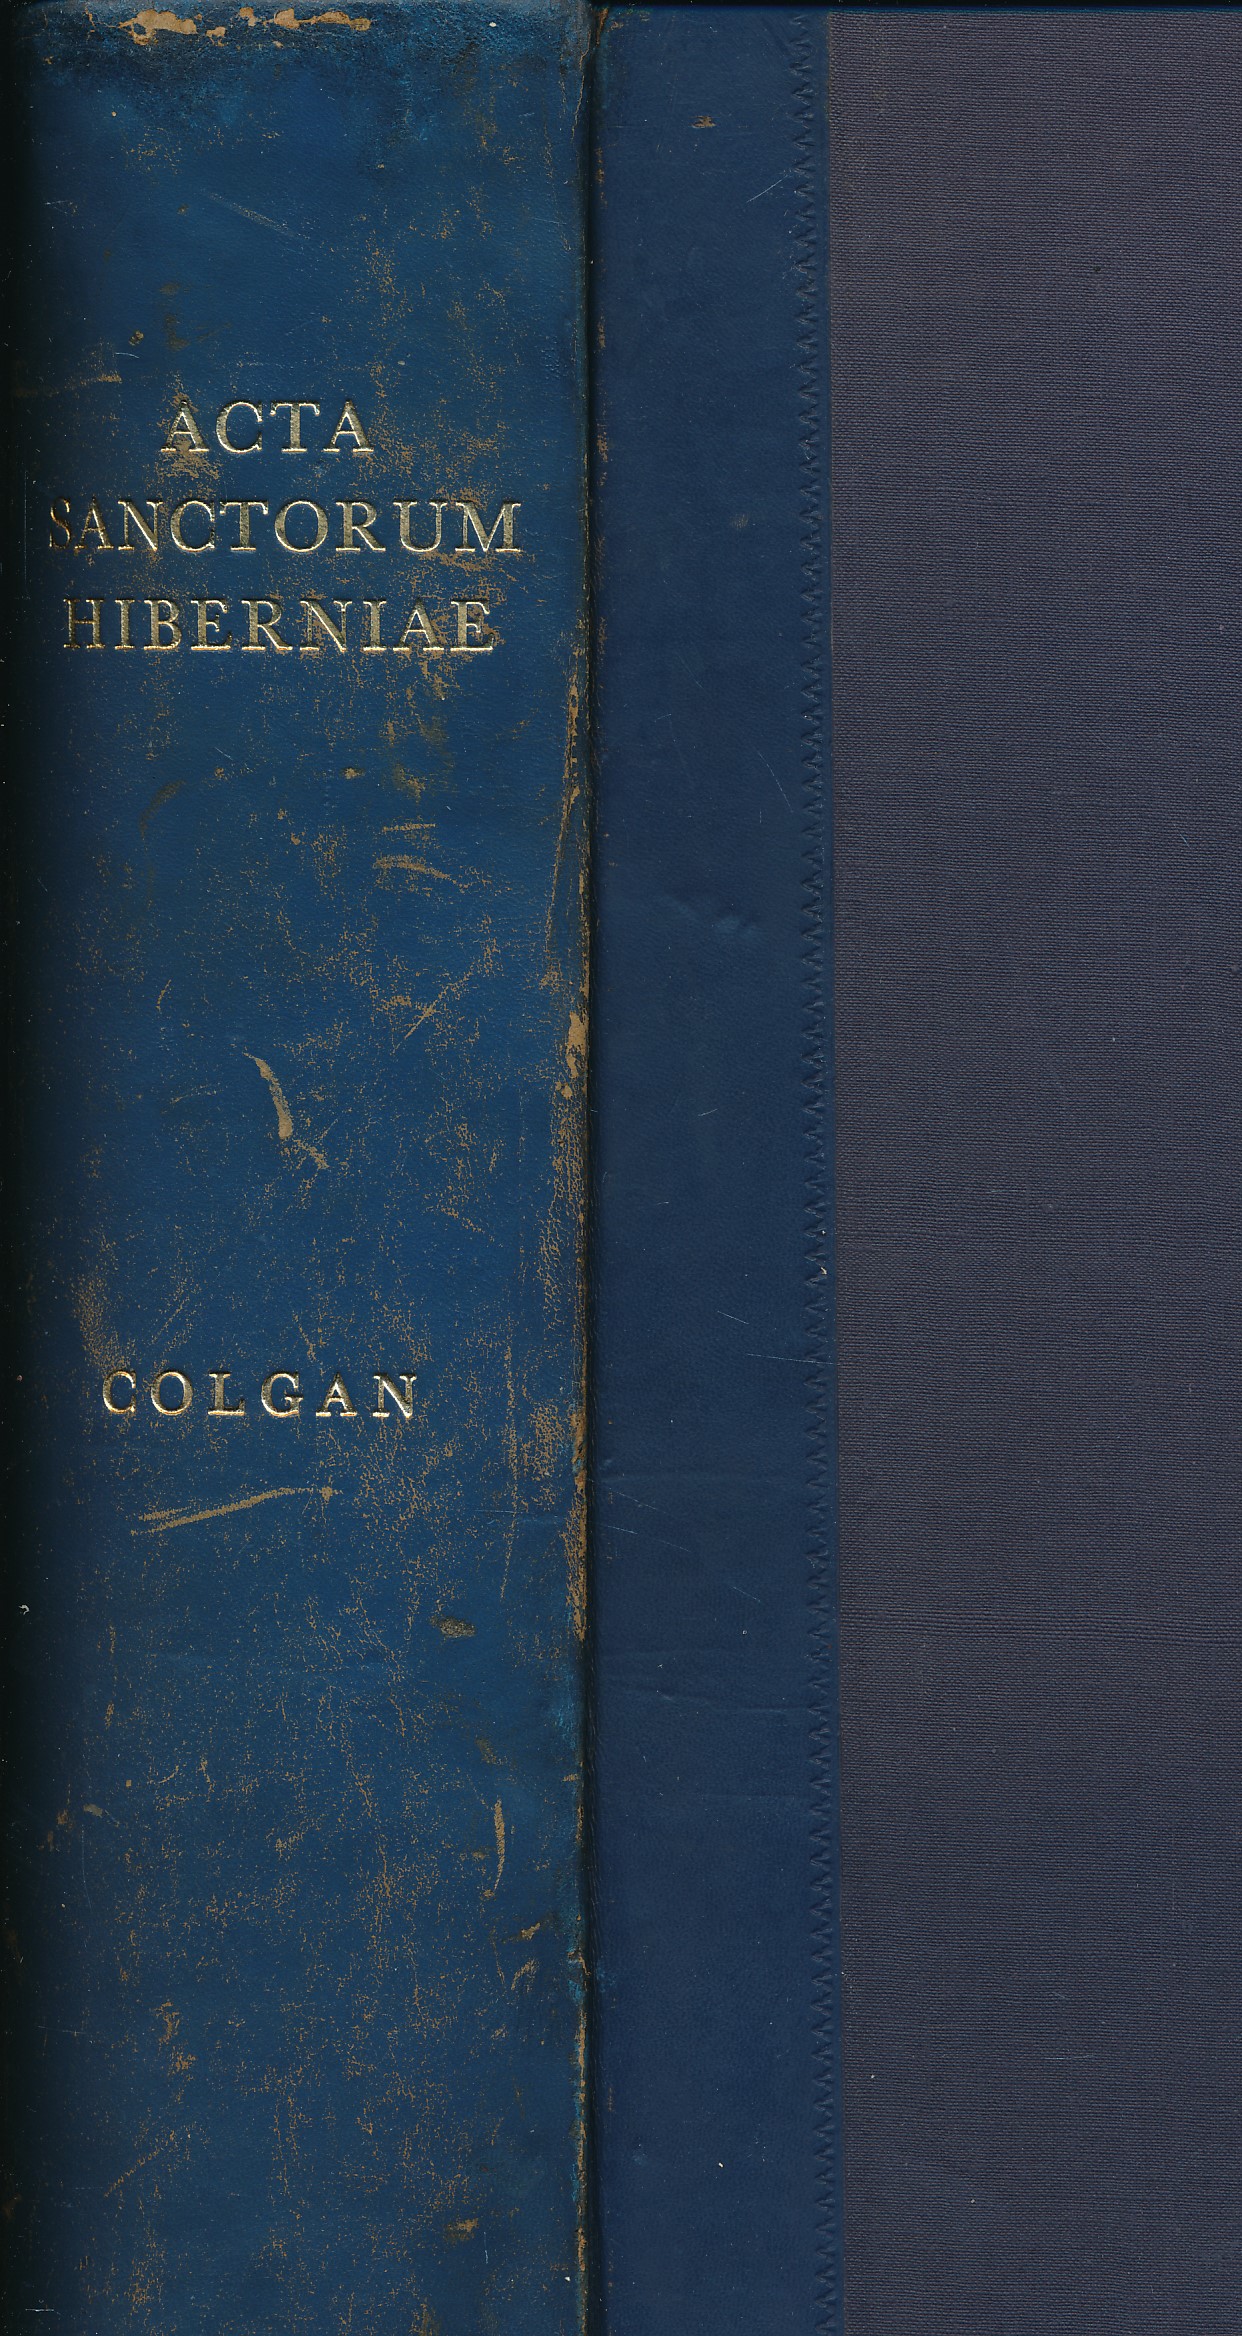 The 'Acta Sanctorum Hiberniae' of John Colgan